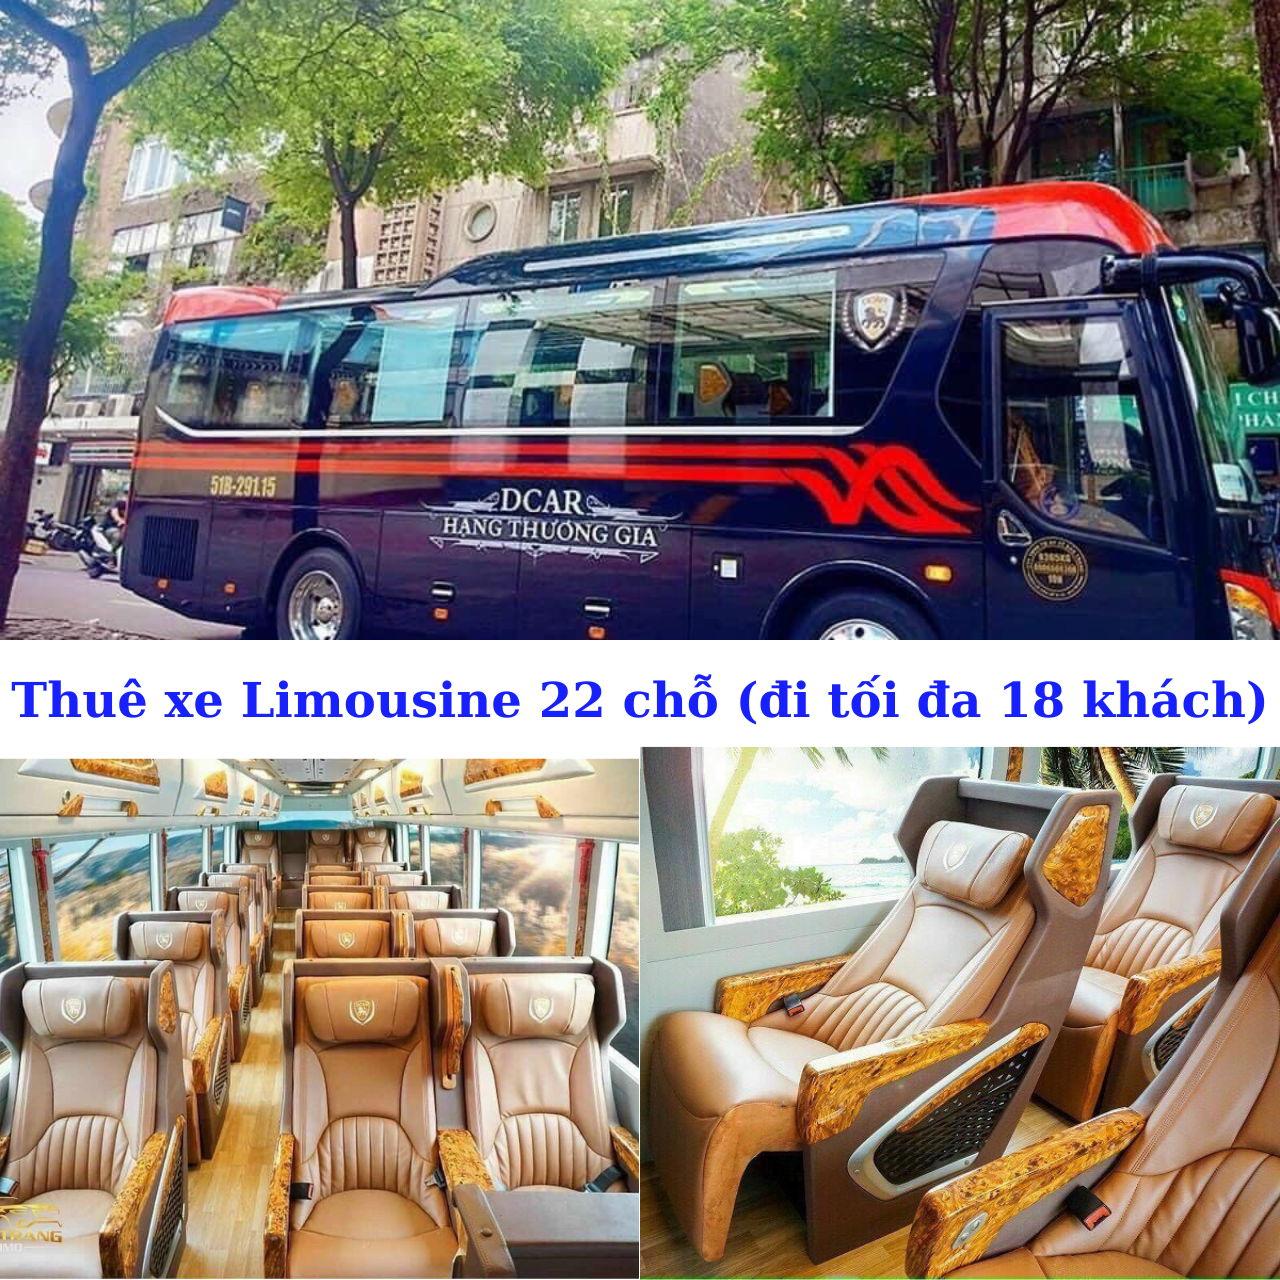 Thuê xe Limousine 22 chỗ (đi tối đa 18 khách).png (2.62 MB)